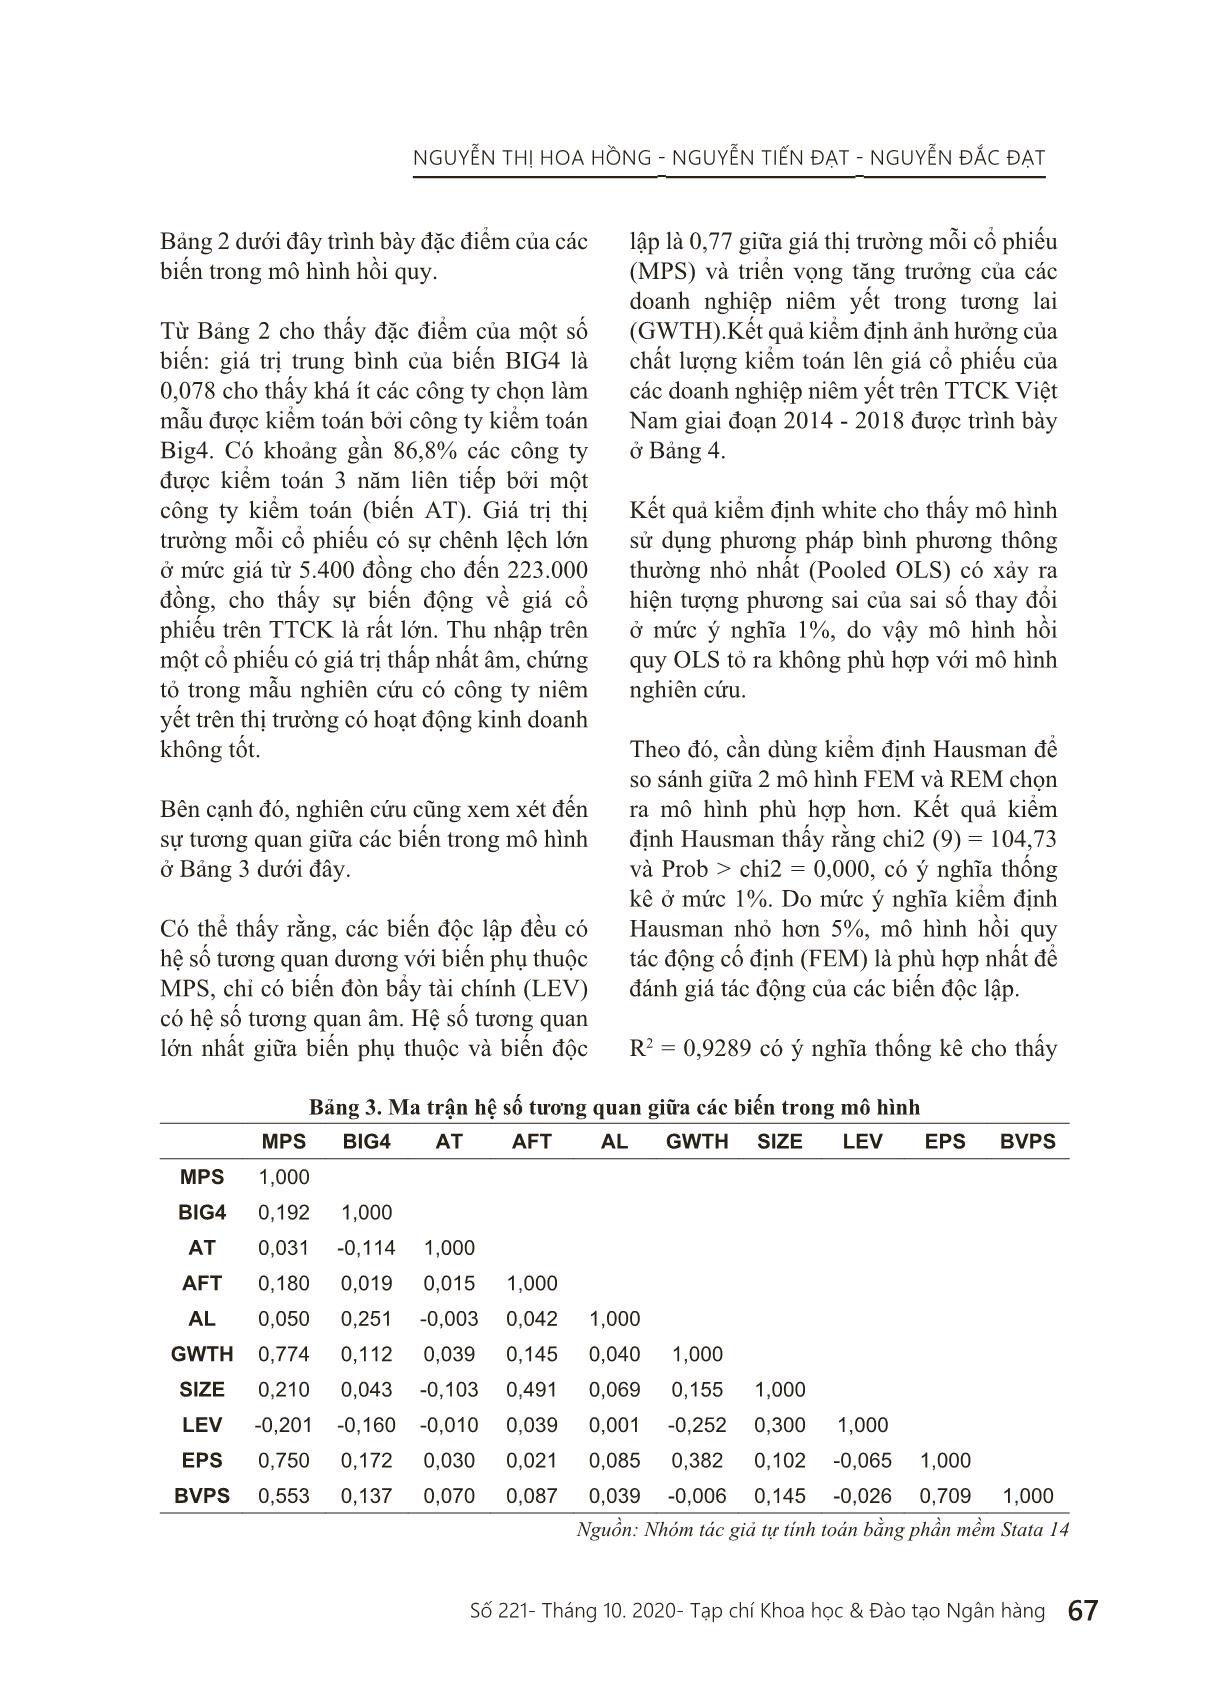 Ảnh hưởng của chất lượng kiểm toán lên giá cổ phiếu của các doanh nghiệp niêm yết trên thị trường chứng khoán Việt Nam trang 9